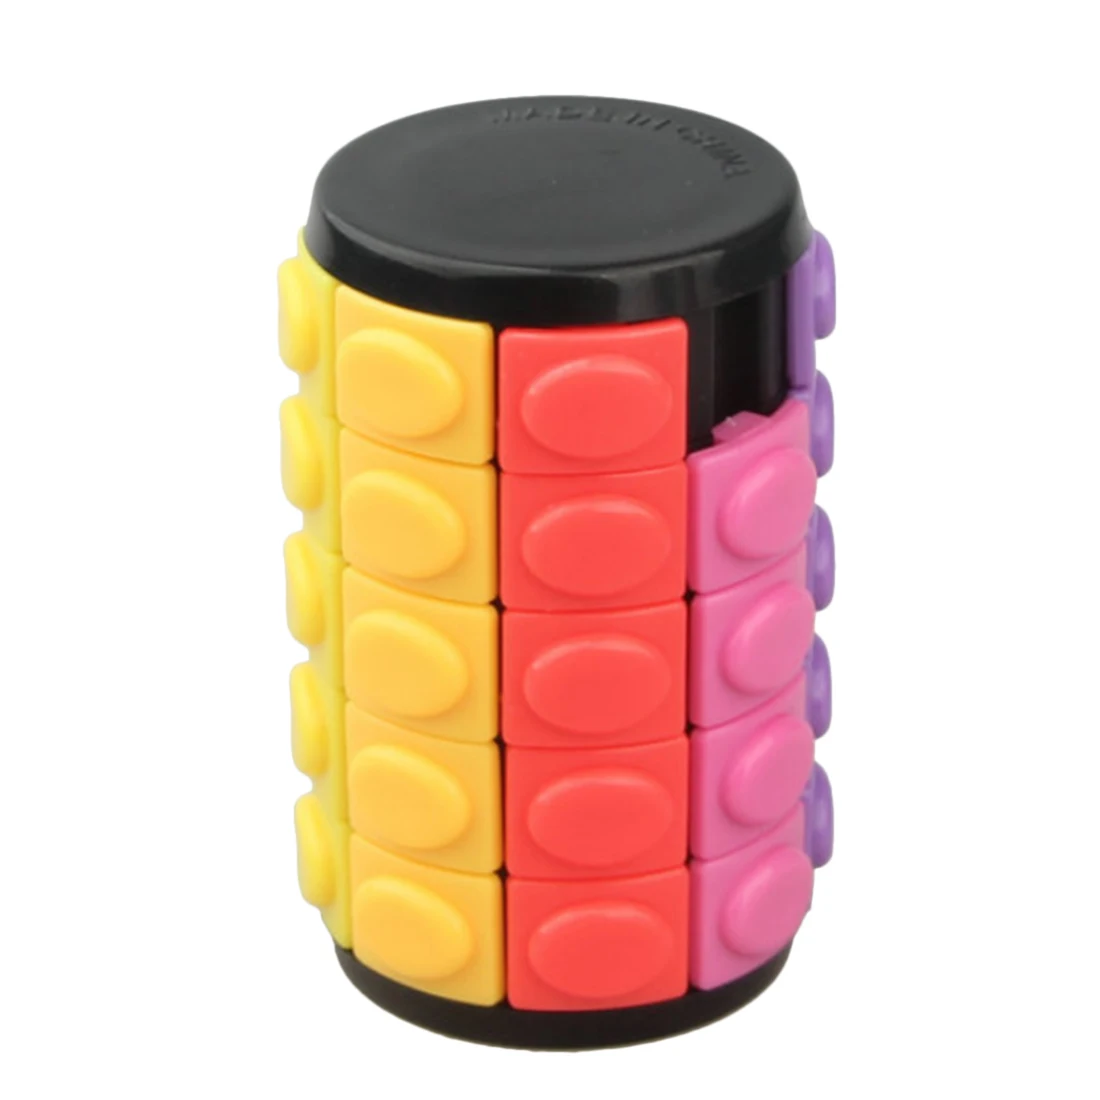 X-Cube красочные пятислойные Магическая башня творческая игрушка-головоломка для вызова